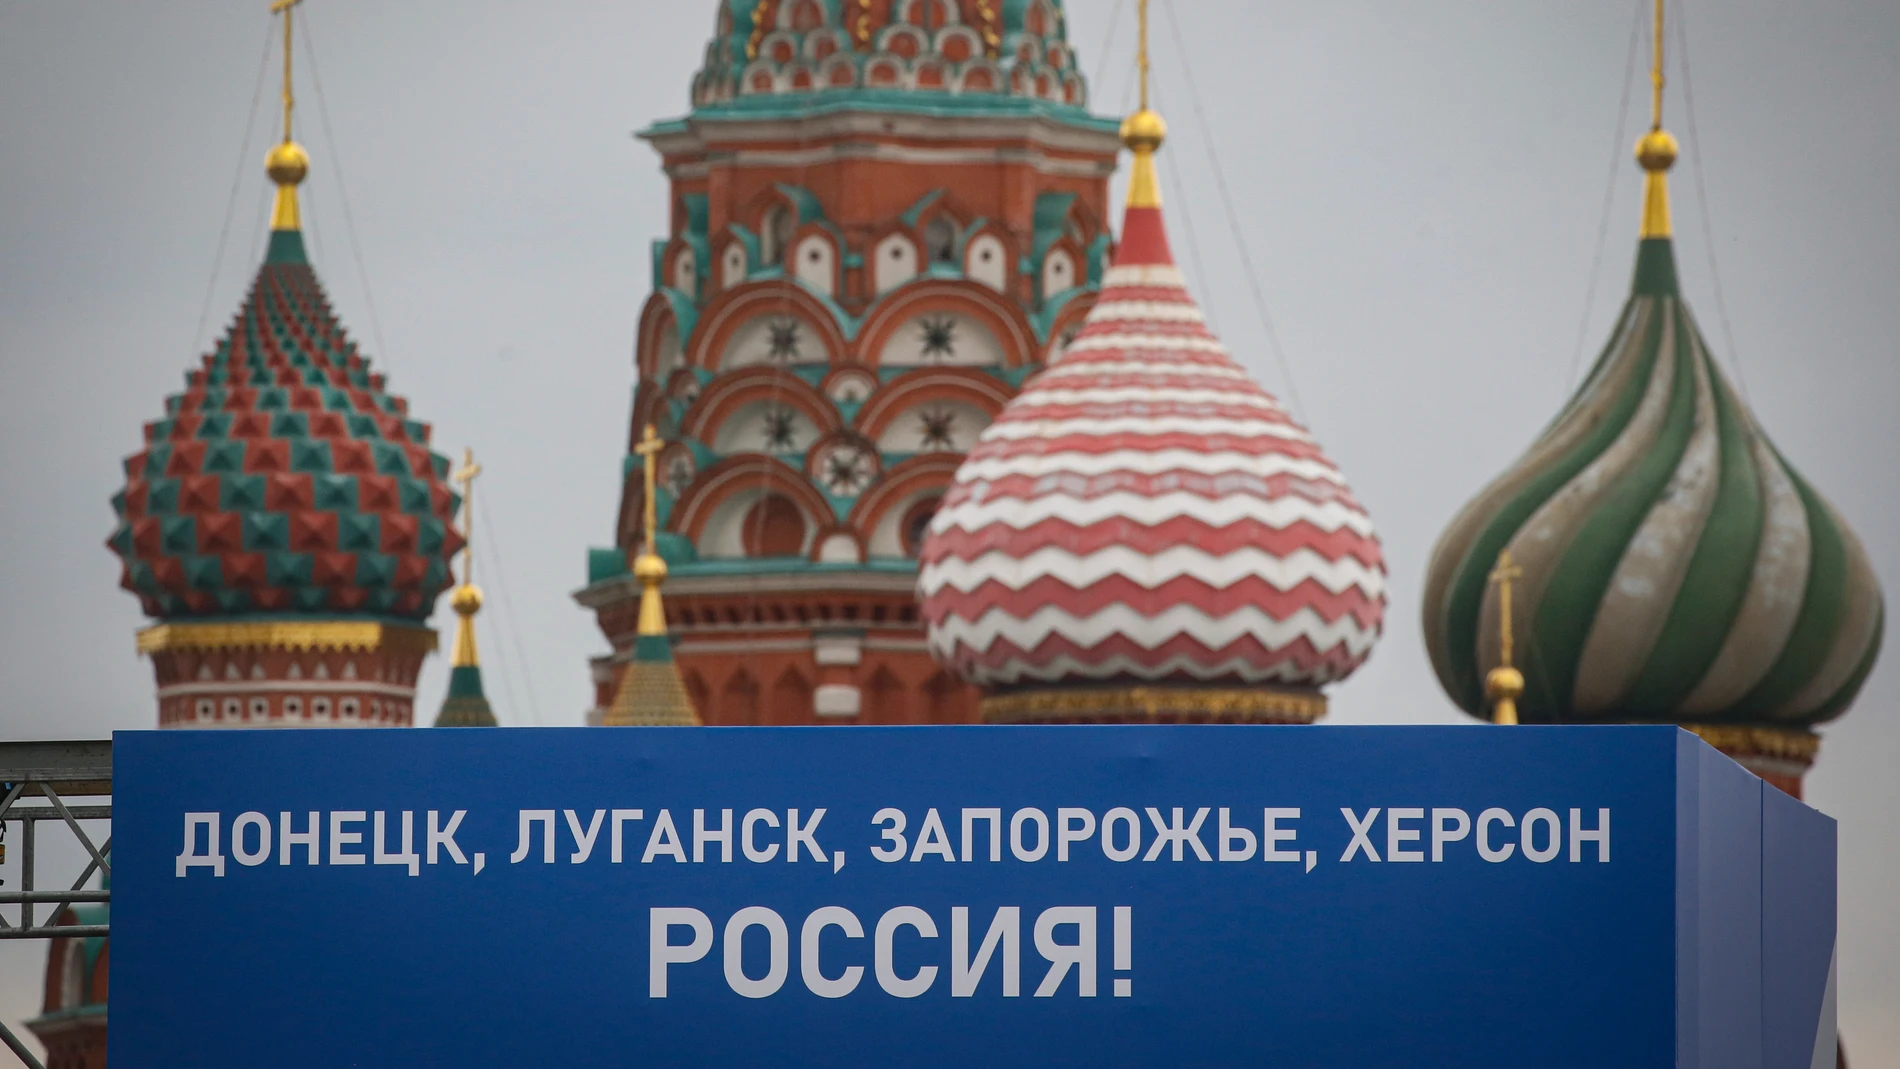 Preparativos en Moscú para celebrar la anexión de territorios ucranianos